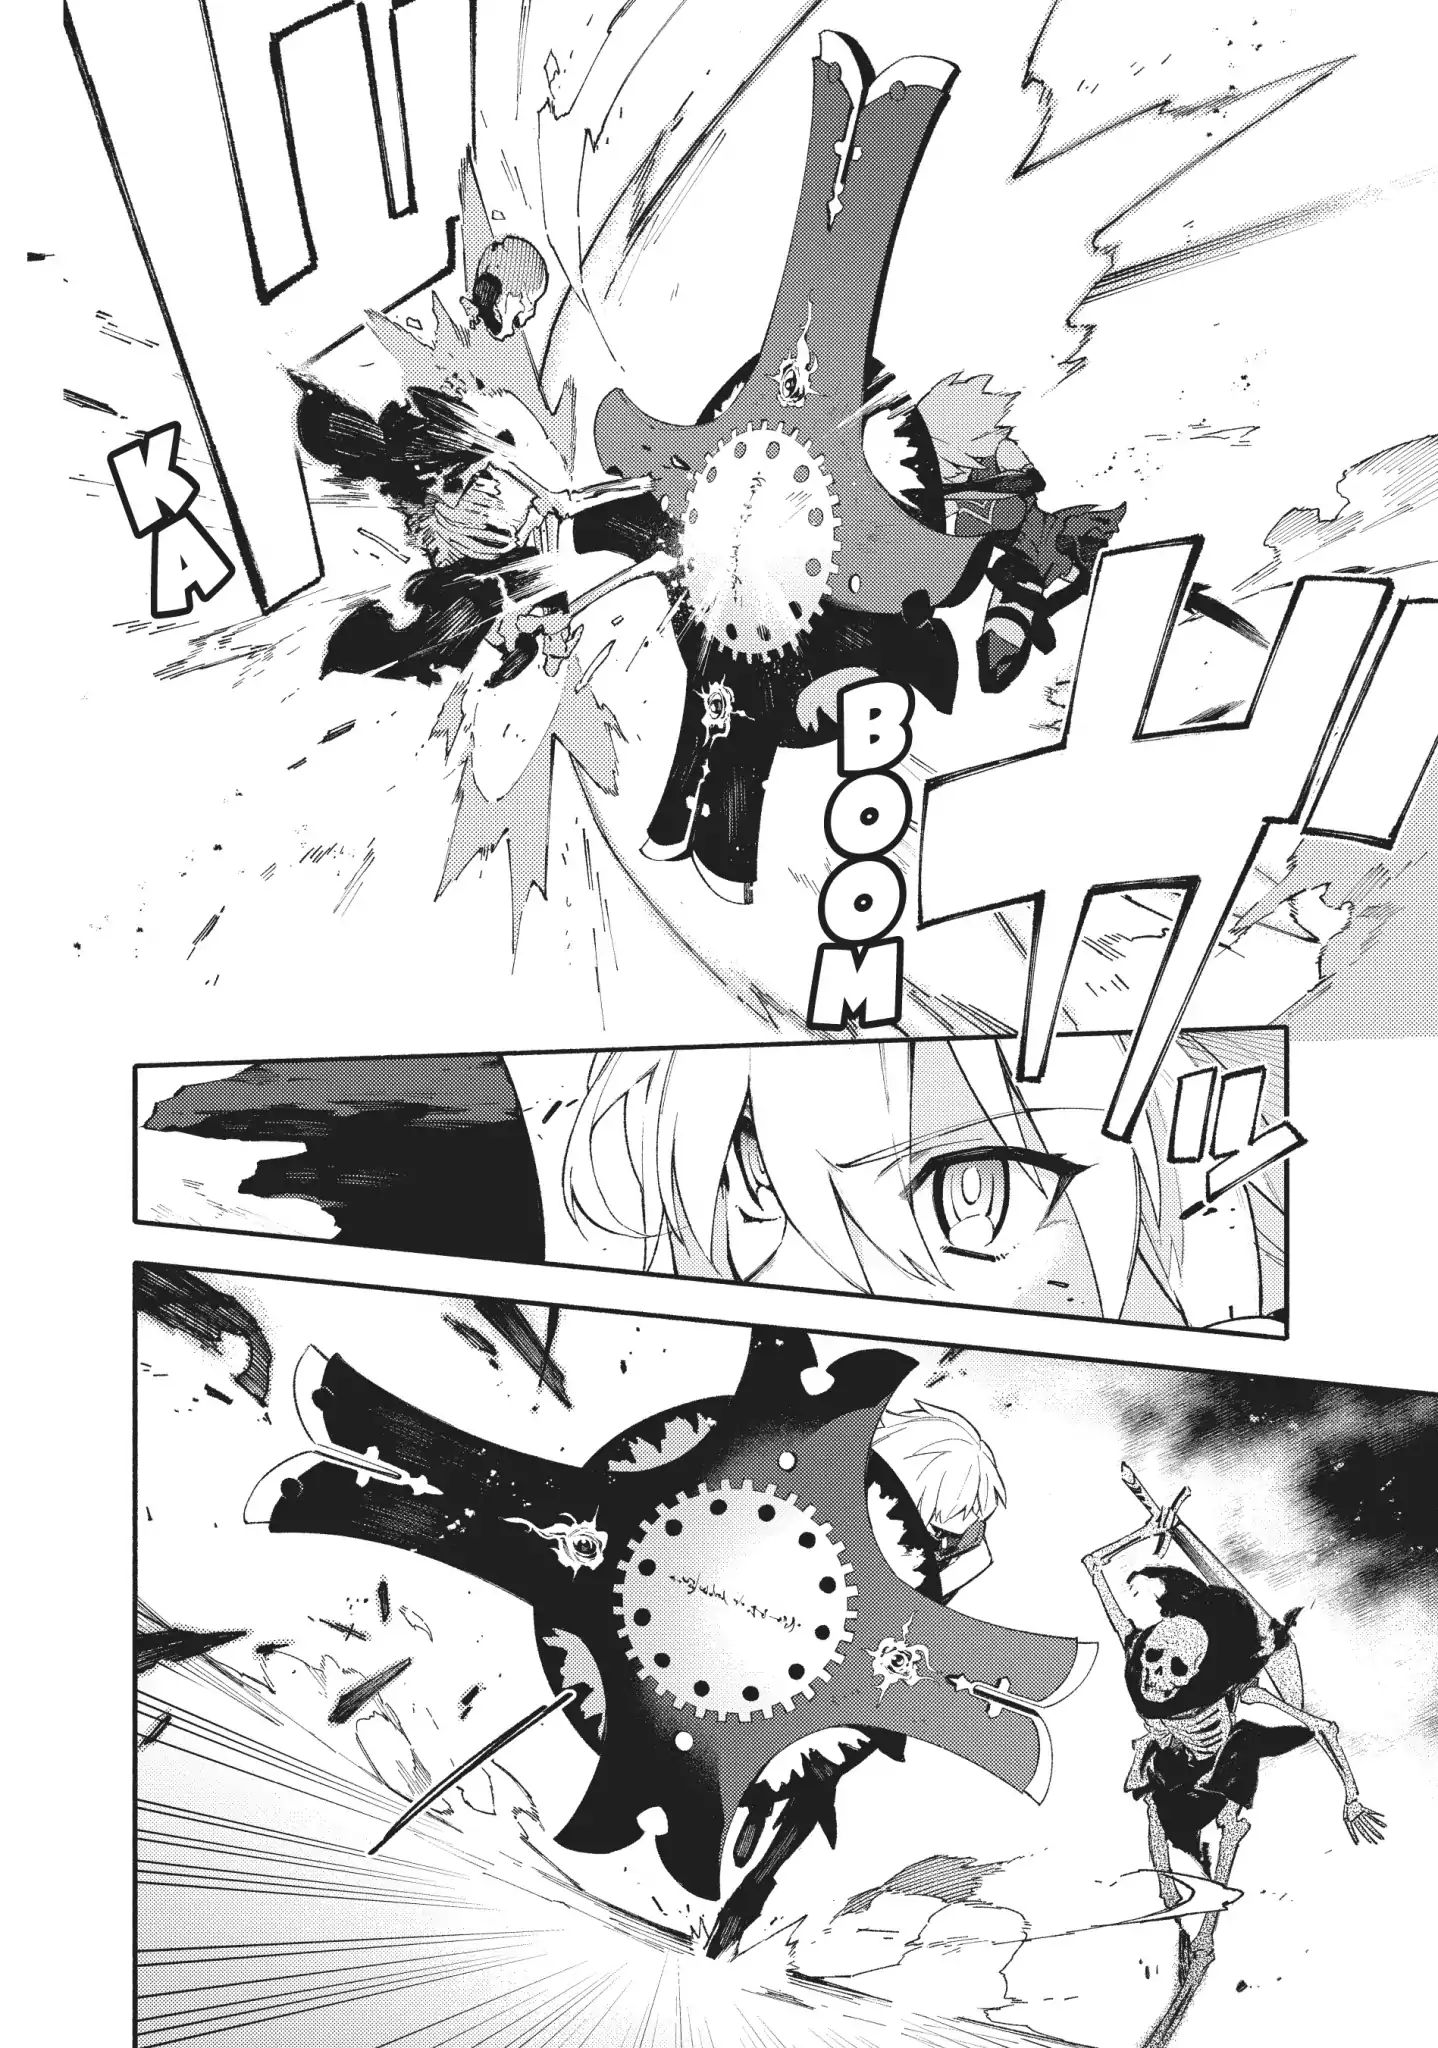 Fate/grand Order -Mortalis:stella- Vol 1 Verse 2: Flame Contaminated City: Fuyuki - Picture 2